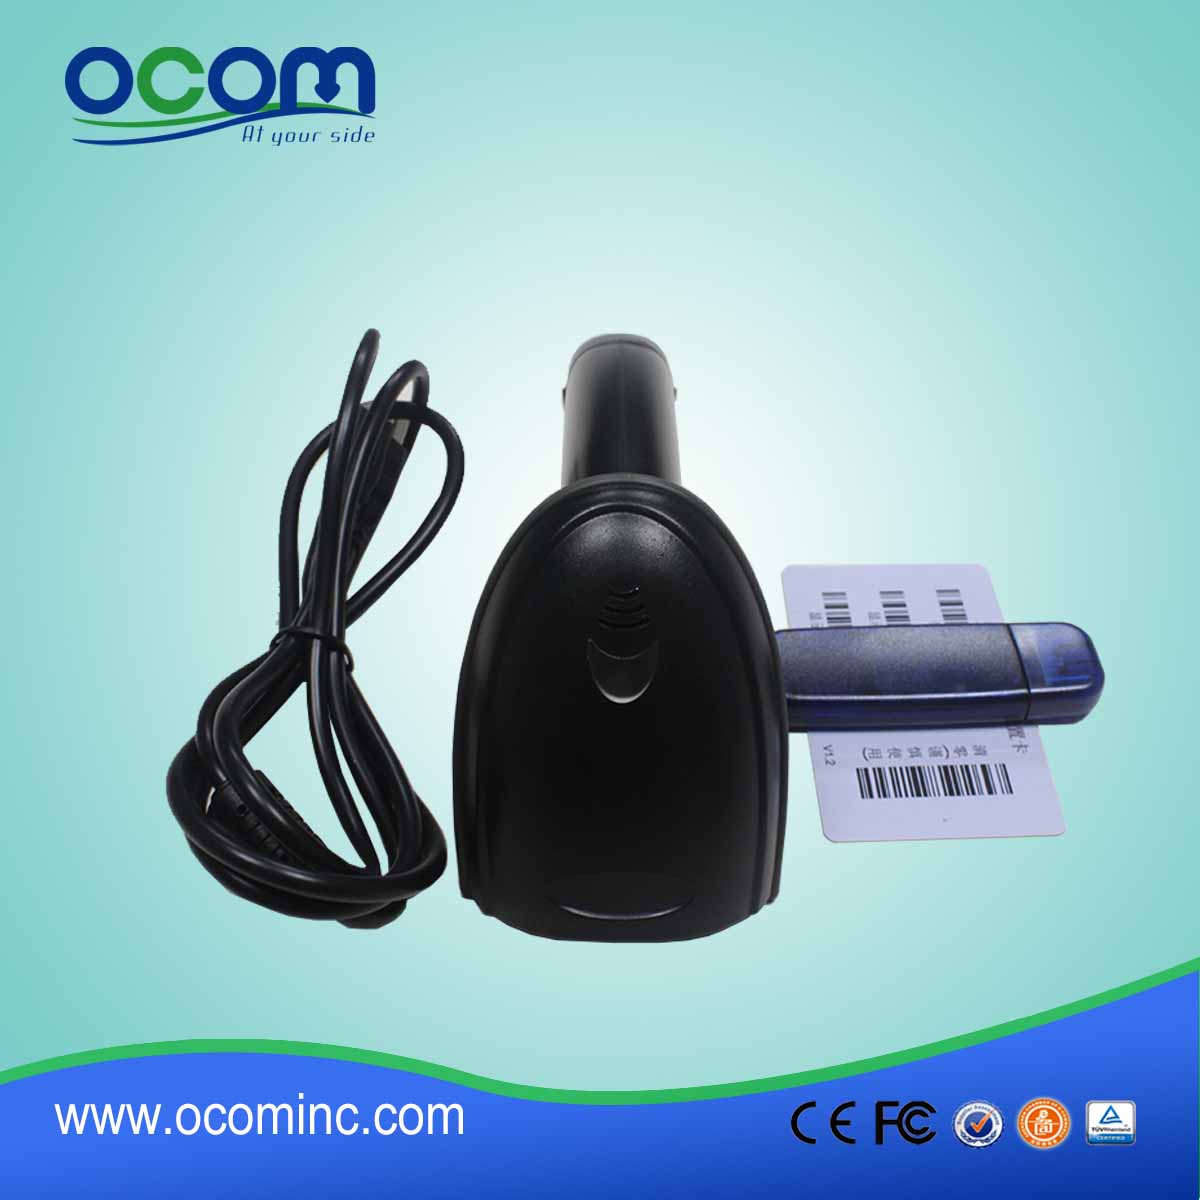 OCBS-LA11 economici automatico USB laser palmare 1D Barcode scanner